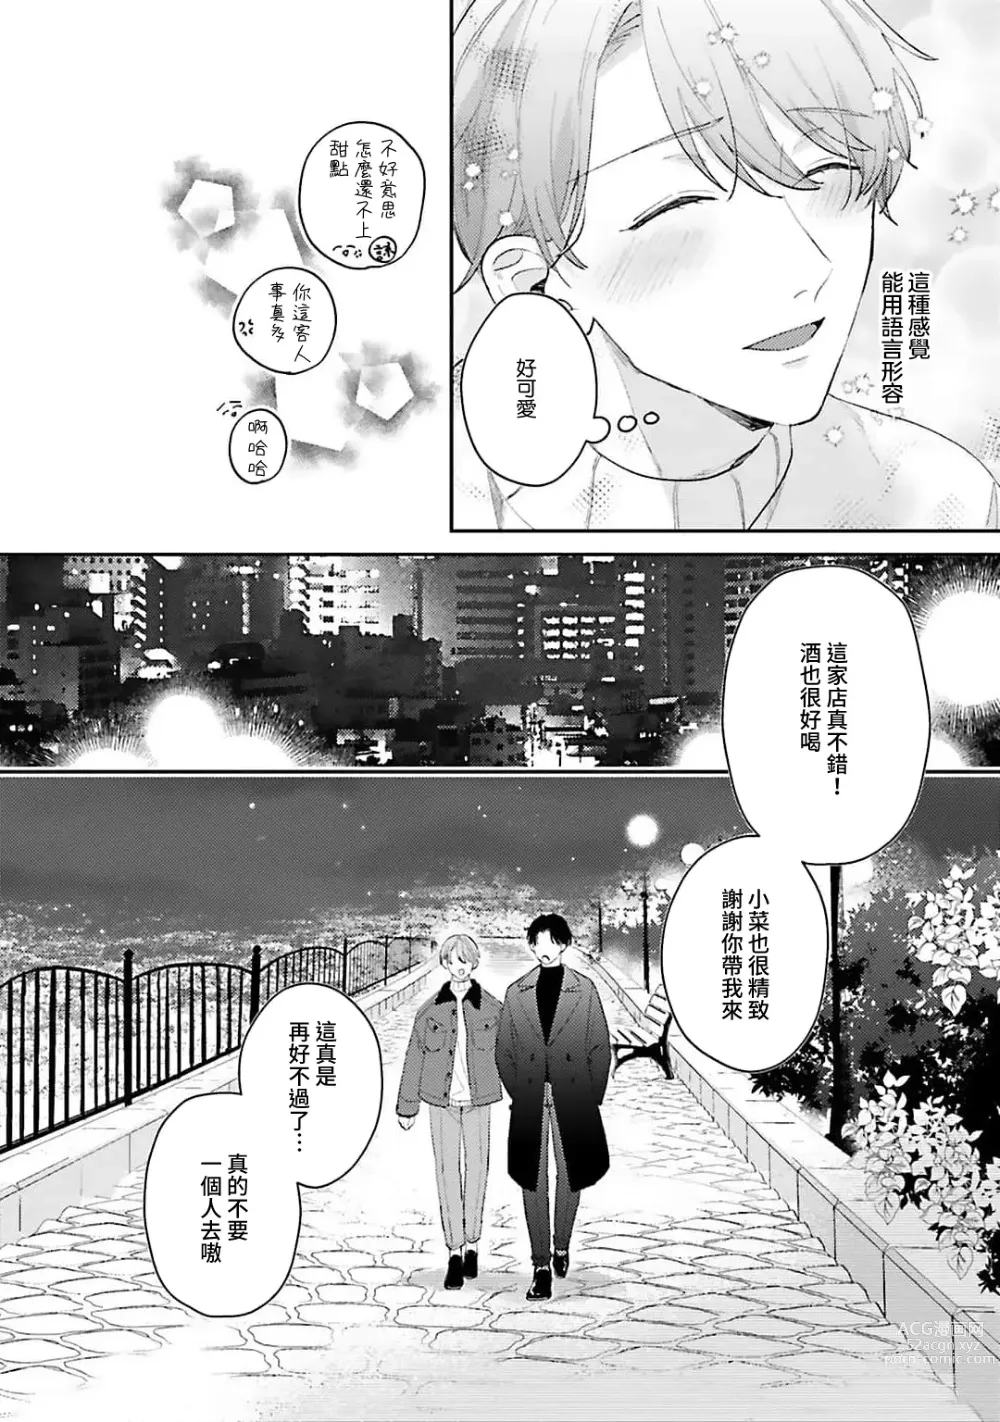 Page 109 of manga 绽放的恋爱皆为醉与甜1